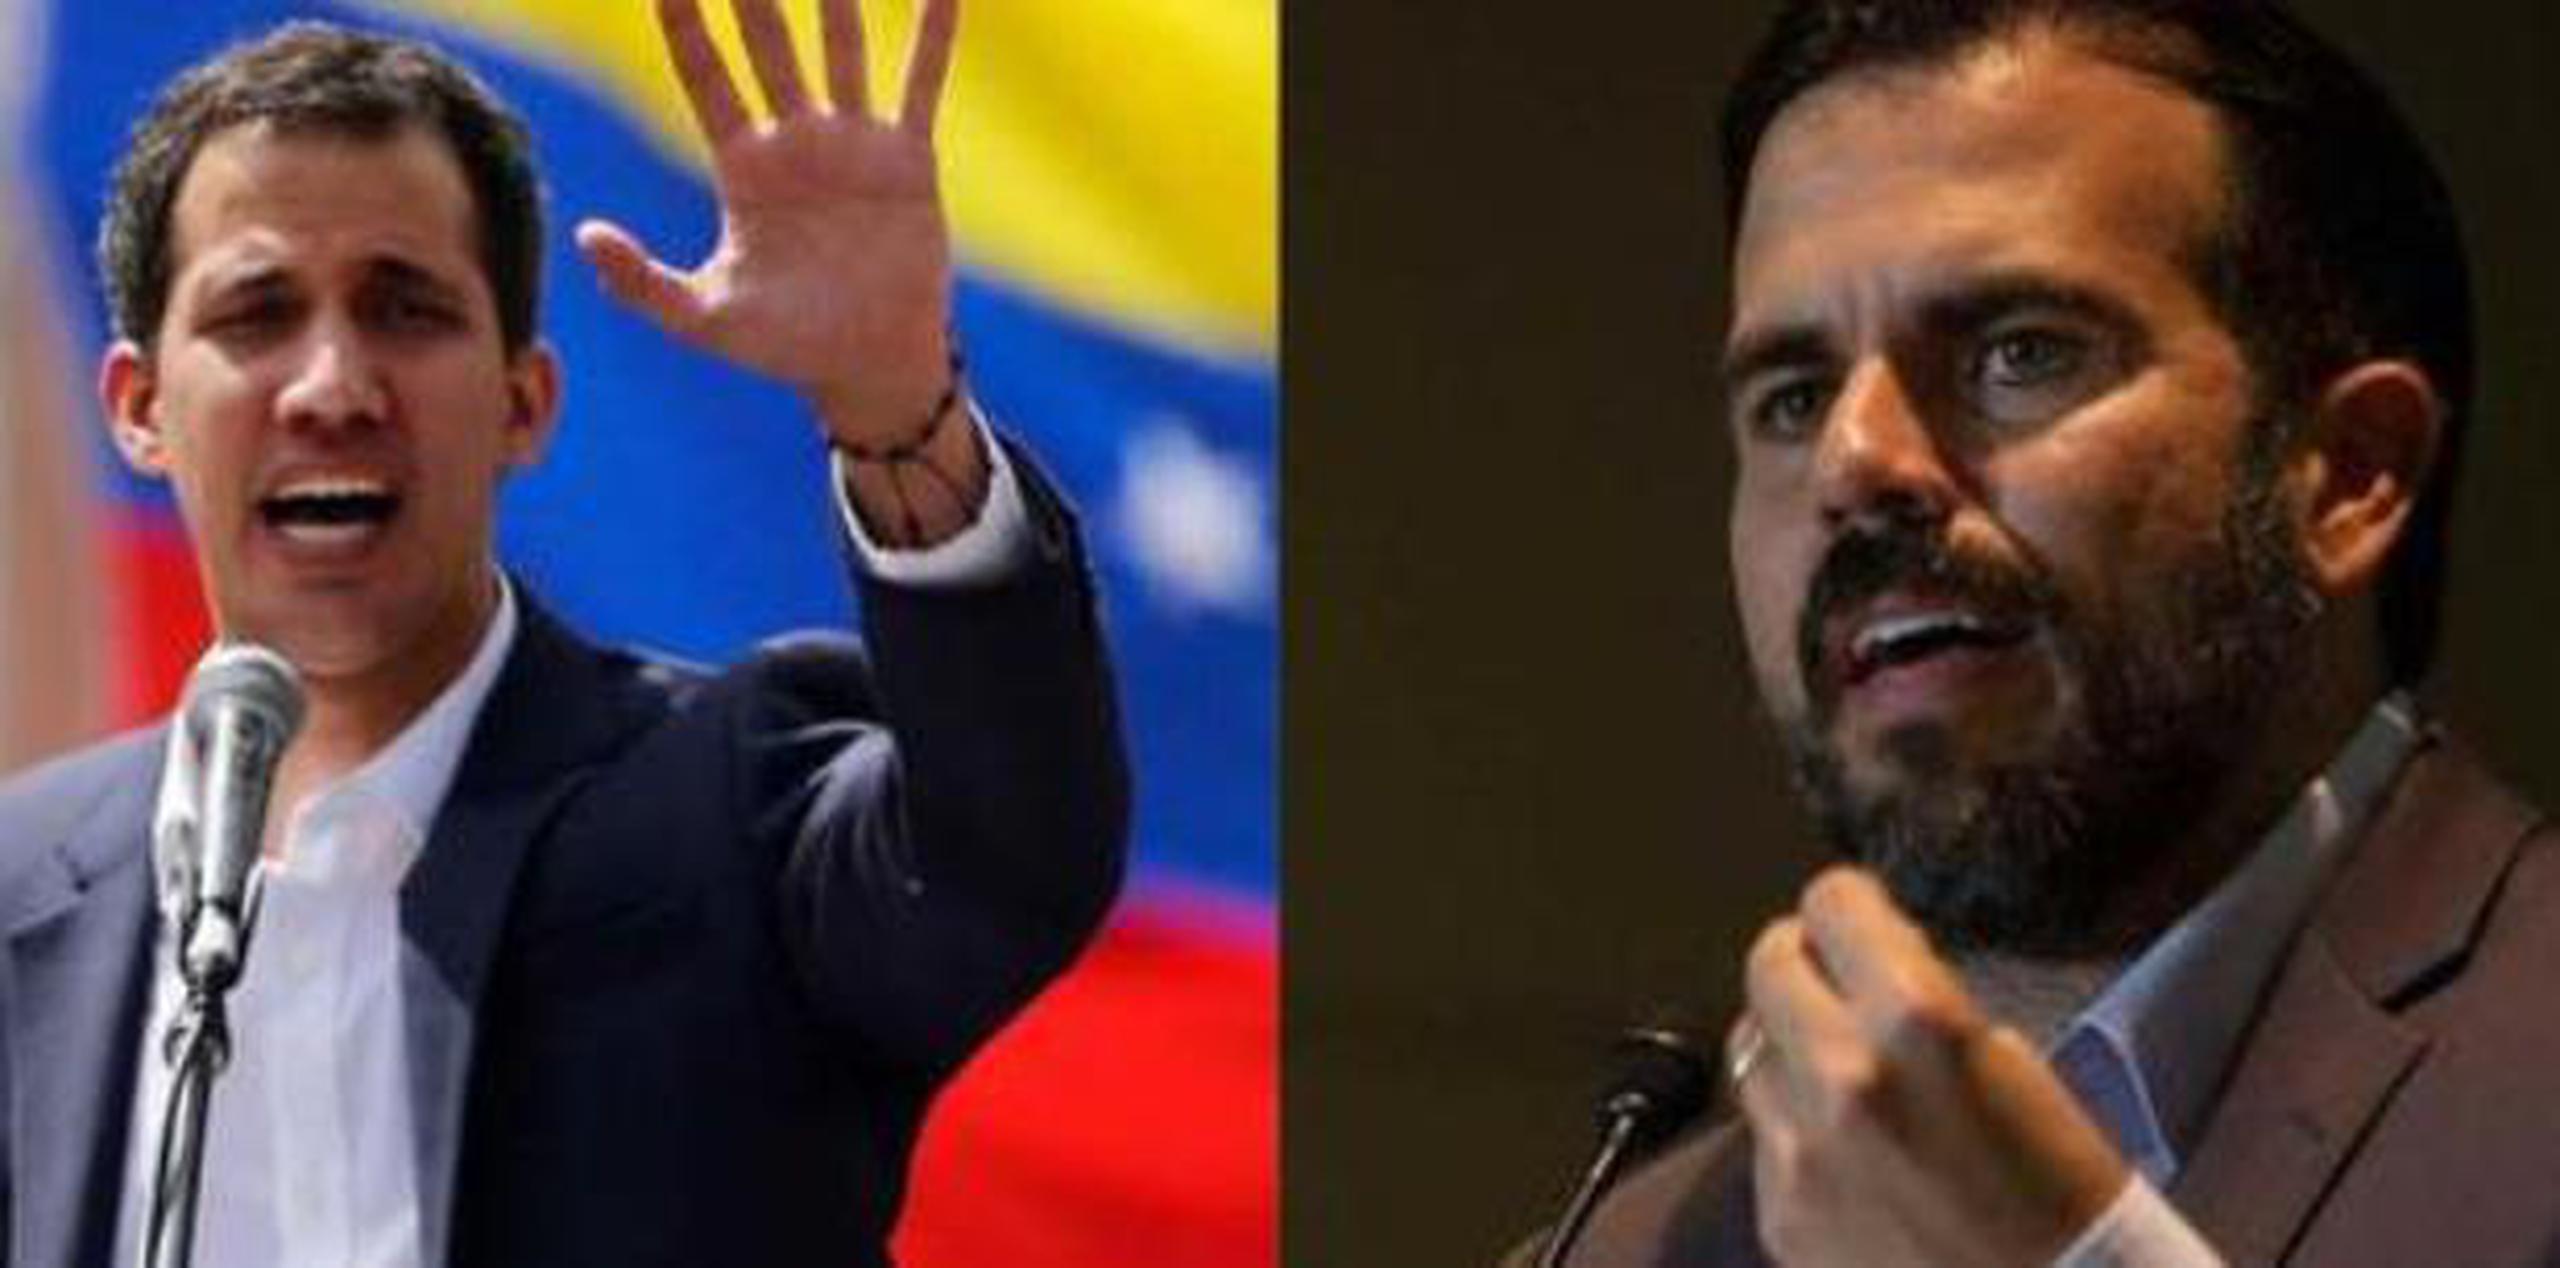 Rosselló, al igual que otros dirigentes políticos del mundo, en numerosas instancias ha expresado apoyo a Guaidó. (archivo)